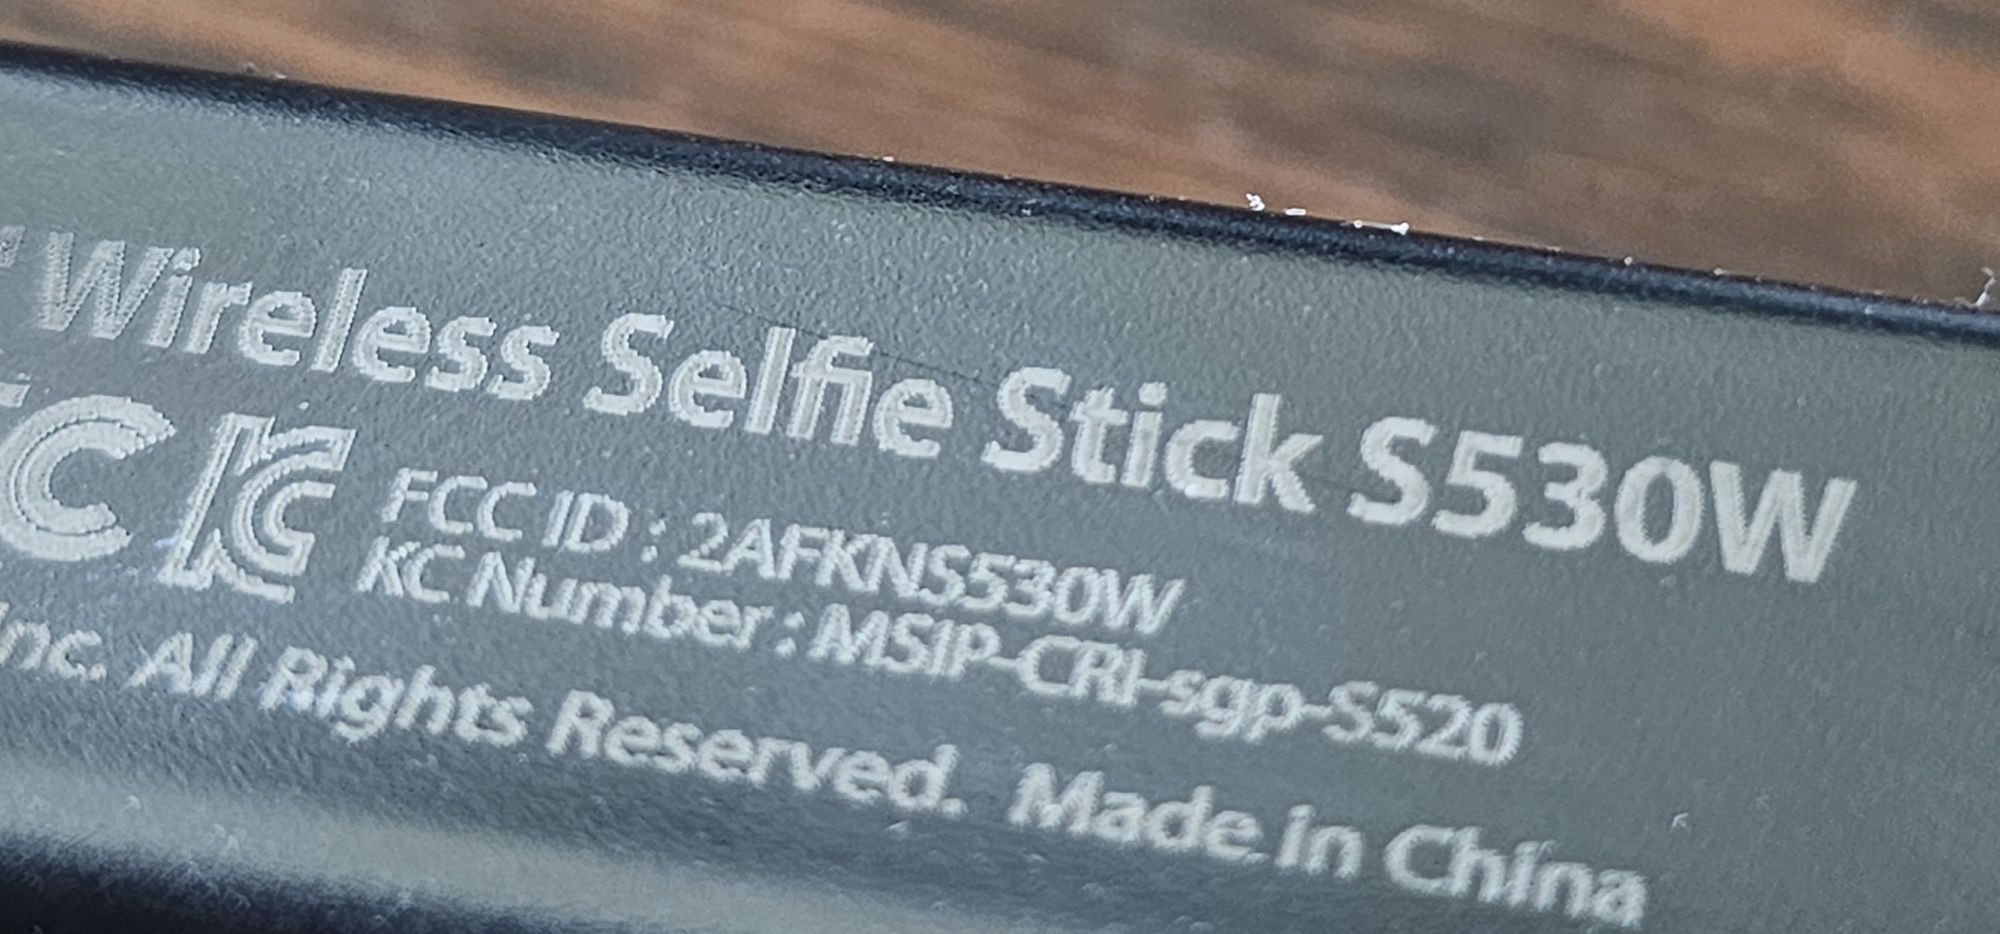 Selfiestick Spiegen S530W Bluetooth